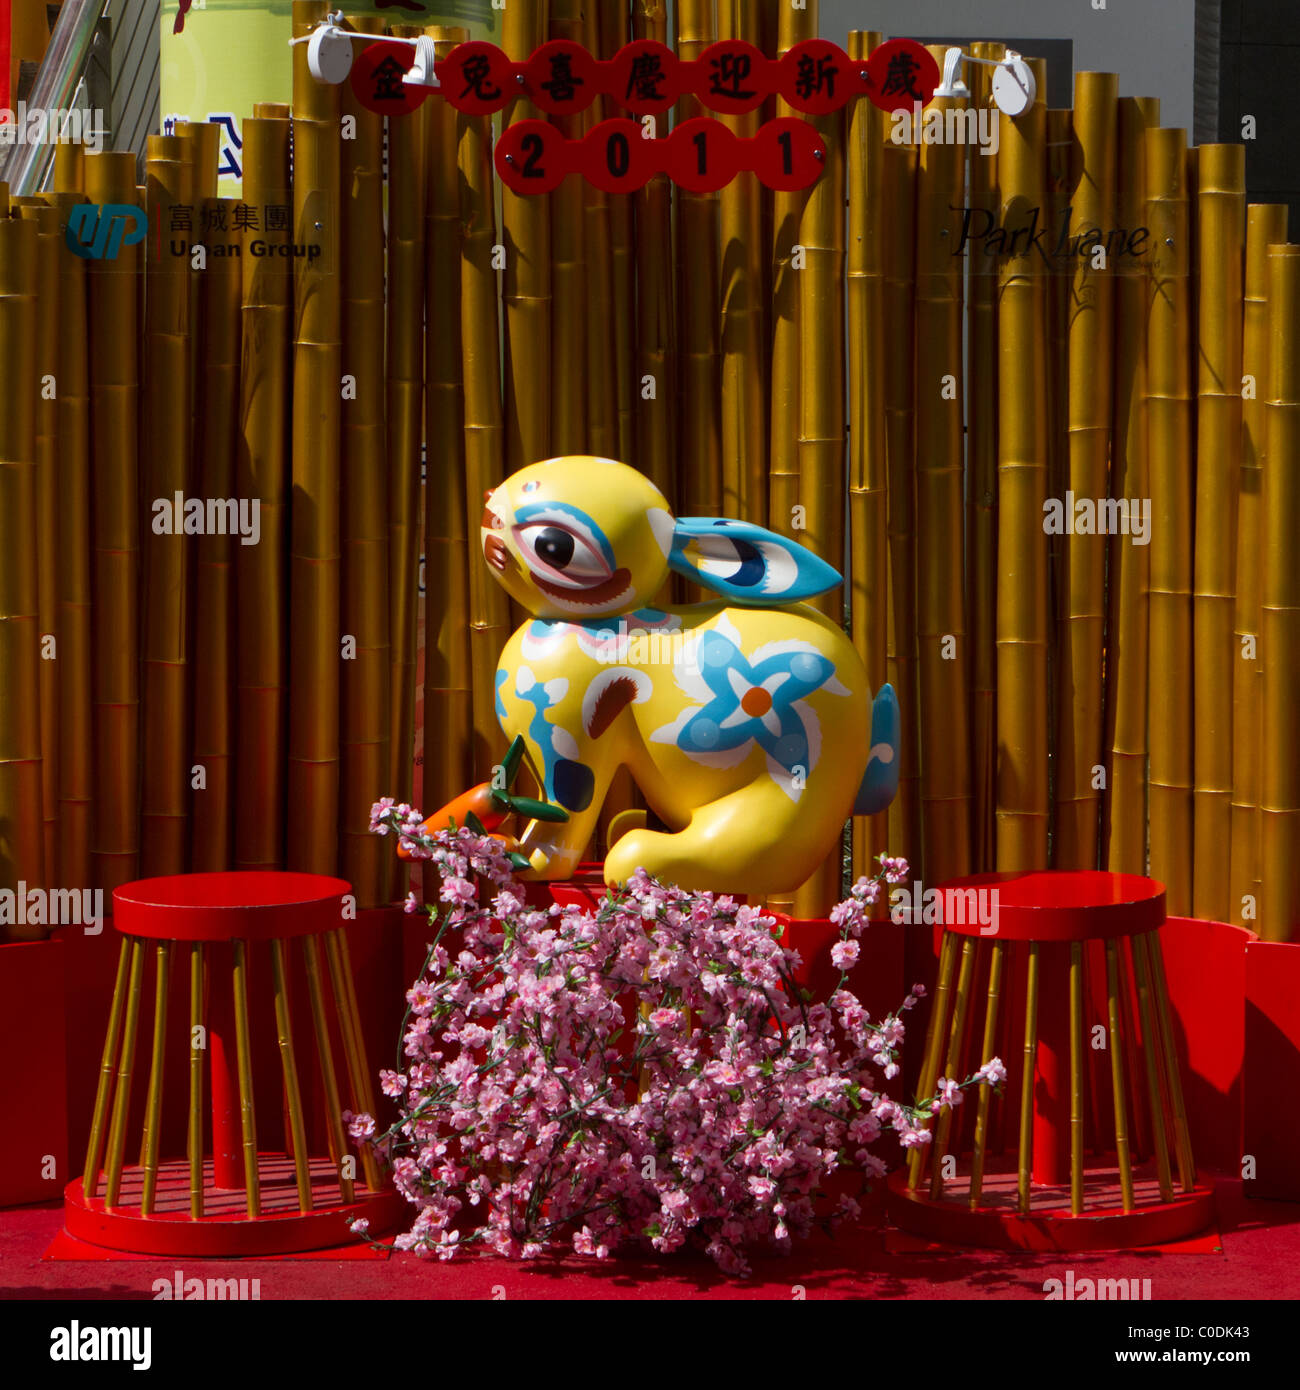 Une image colorée d'un lapin pour célébrer le Nouvel An chinois, l'année du lapin Banque D'Images